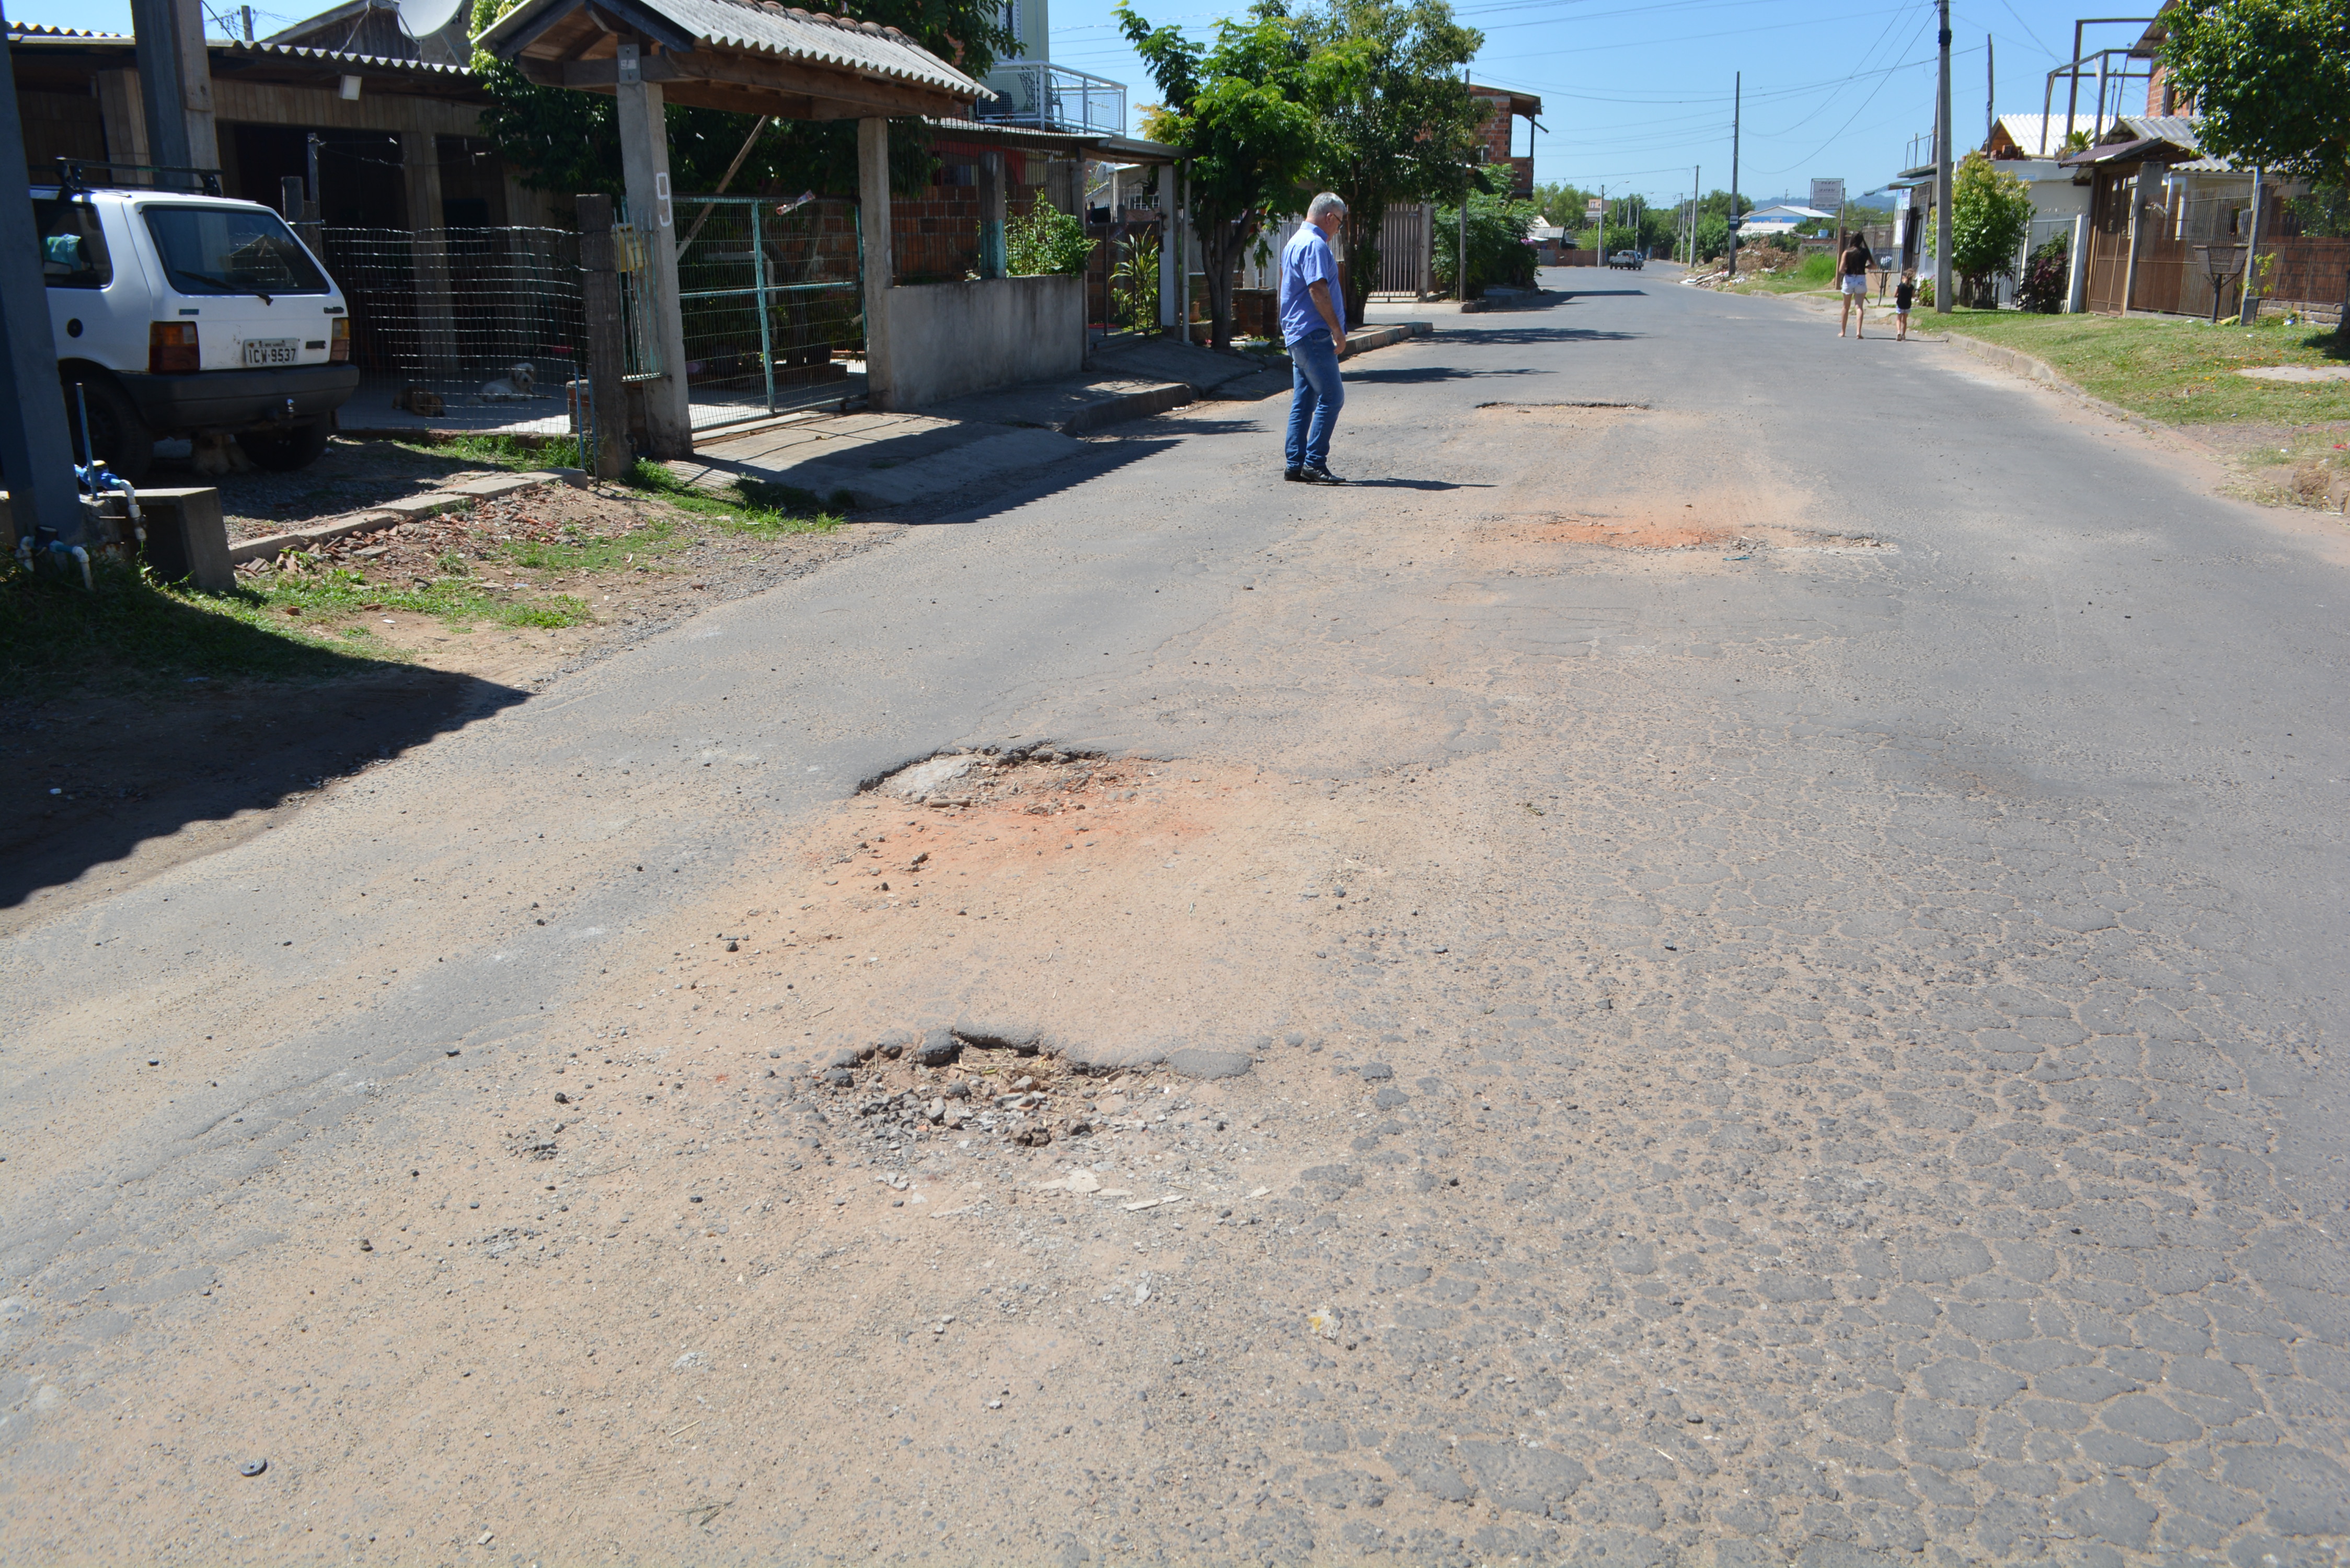 27/02/2019 - Vereador Nor Boeno solicita operação tapa-buracos em rua no bairro Santo Afonso